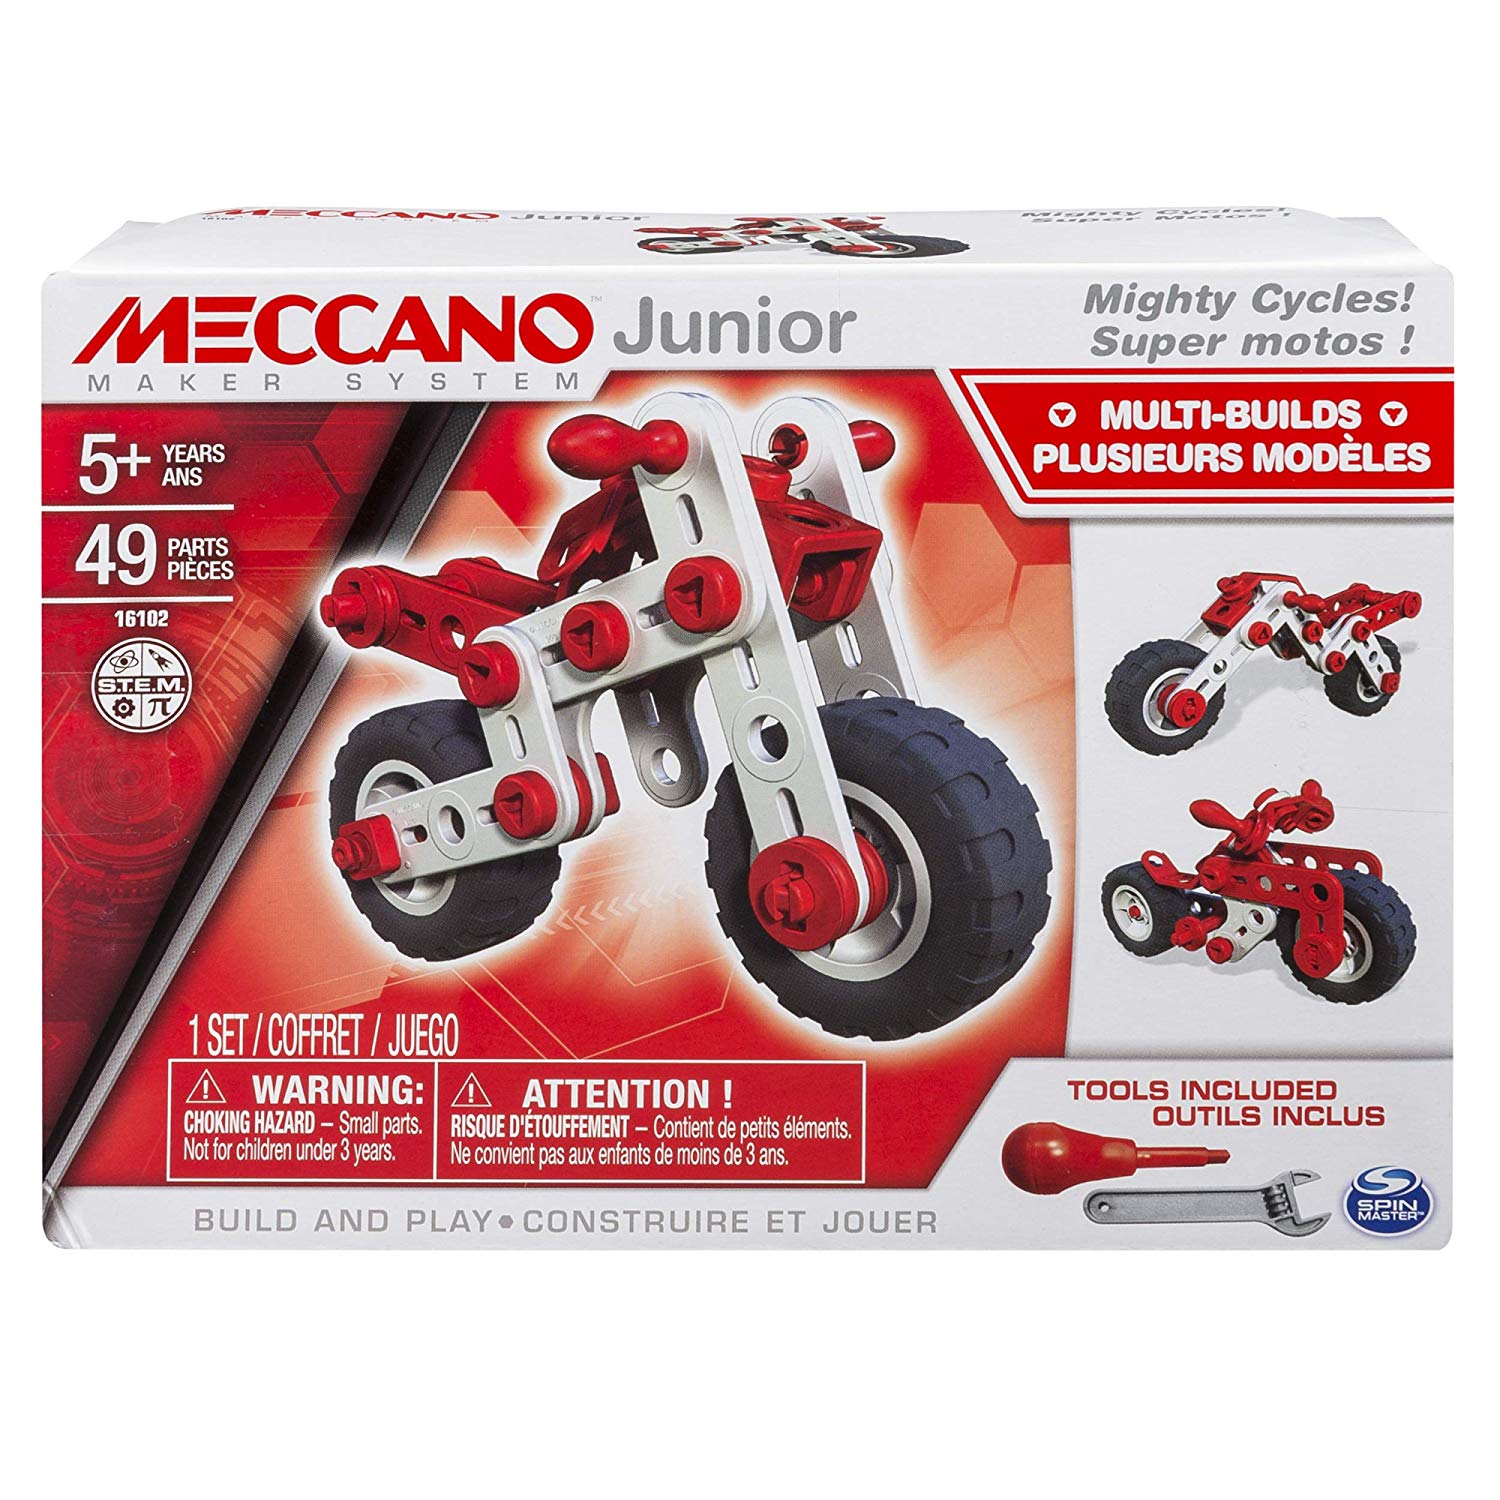 Meccano junior super moto